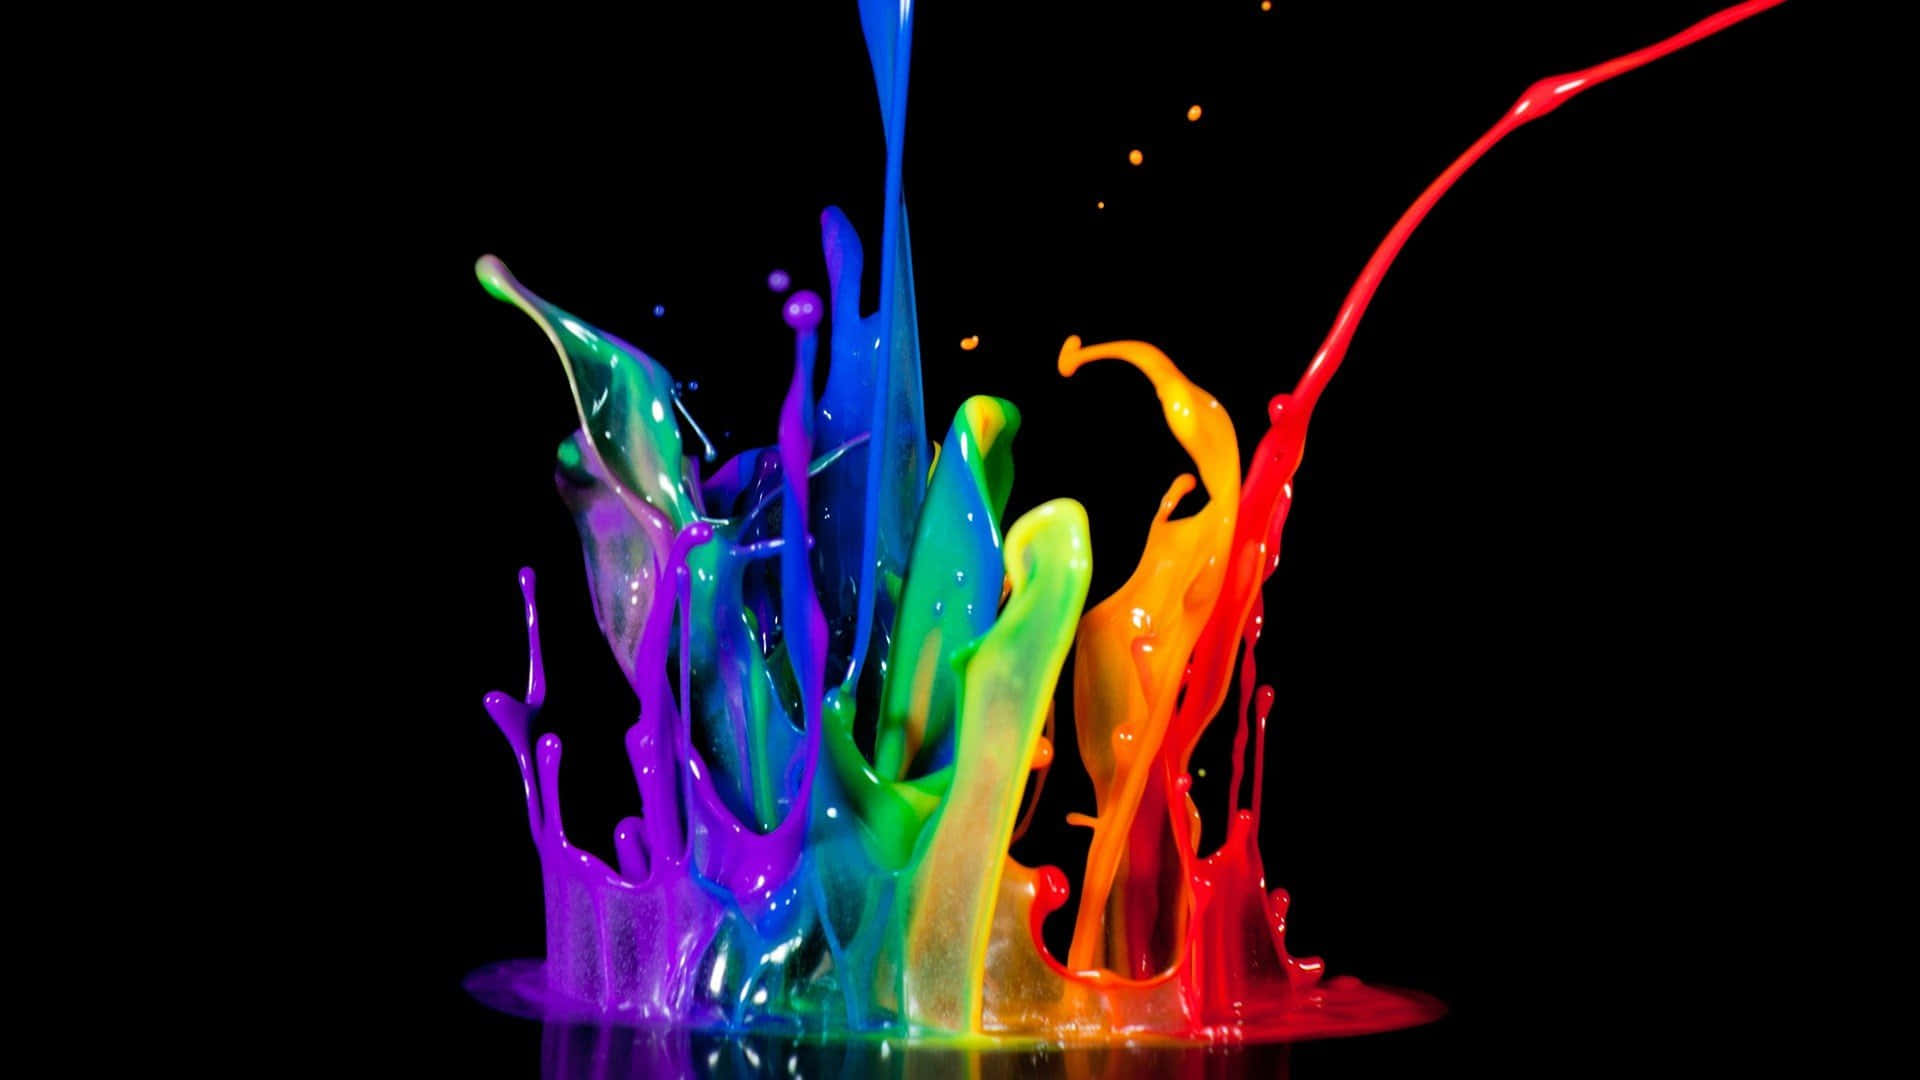 Um Canvas Colorido - Pintando A Imagem Perfeita.